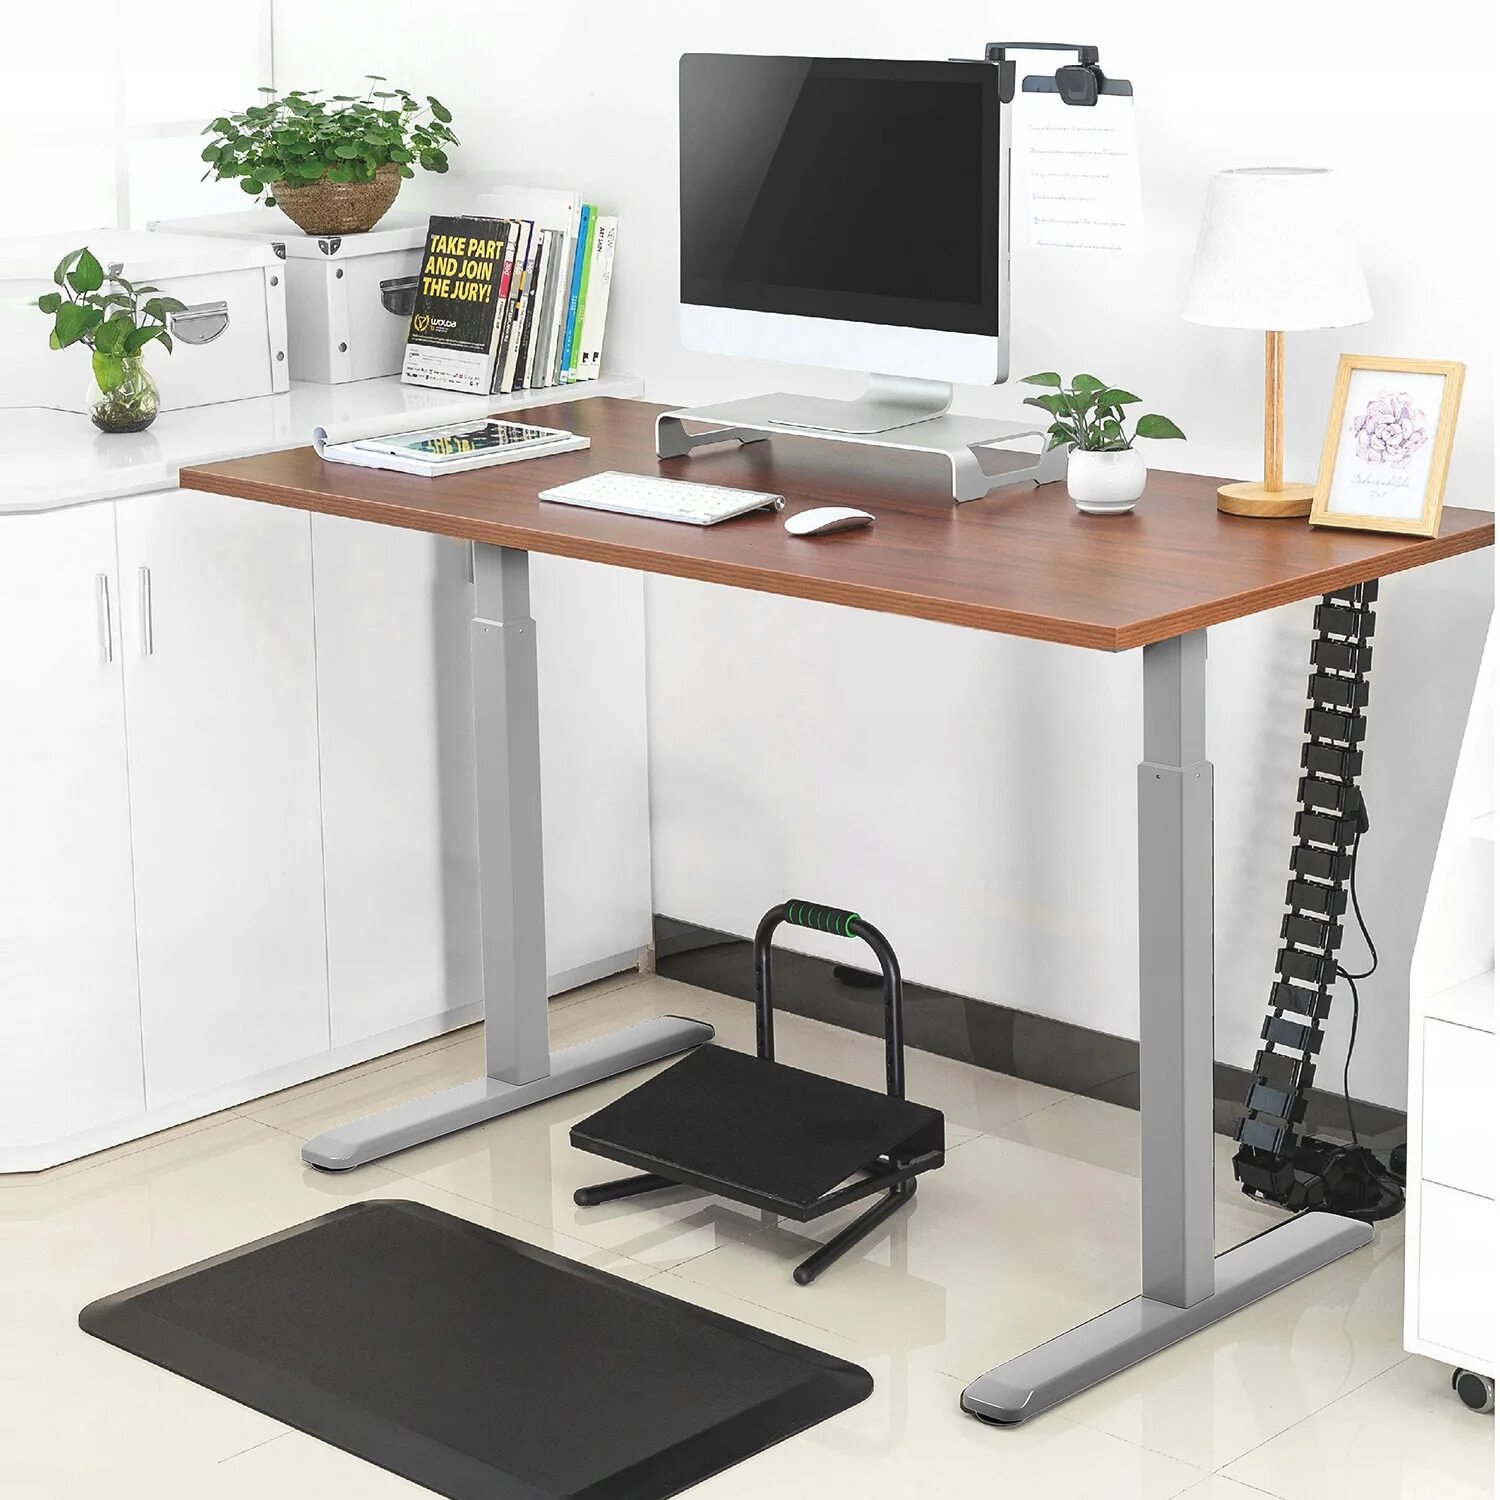 Регулируемый стол икеа. Письменный стол икеа регулируемый по высоте. Стол икеа подъемный механизм. Ikea подъемный стол.